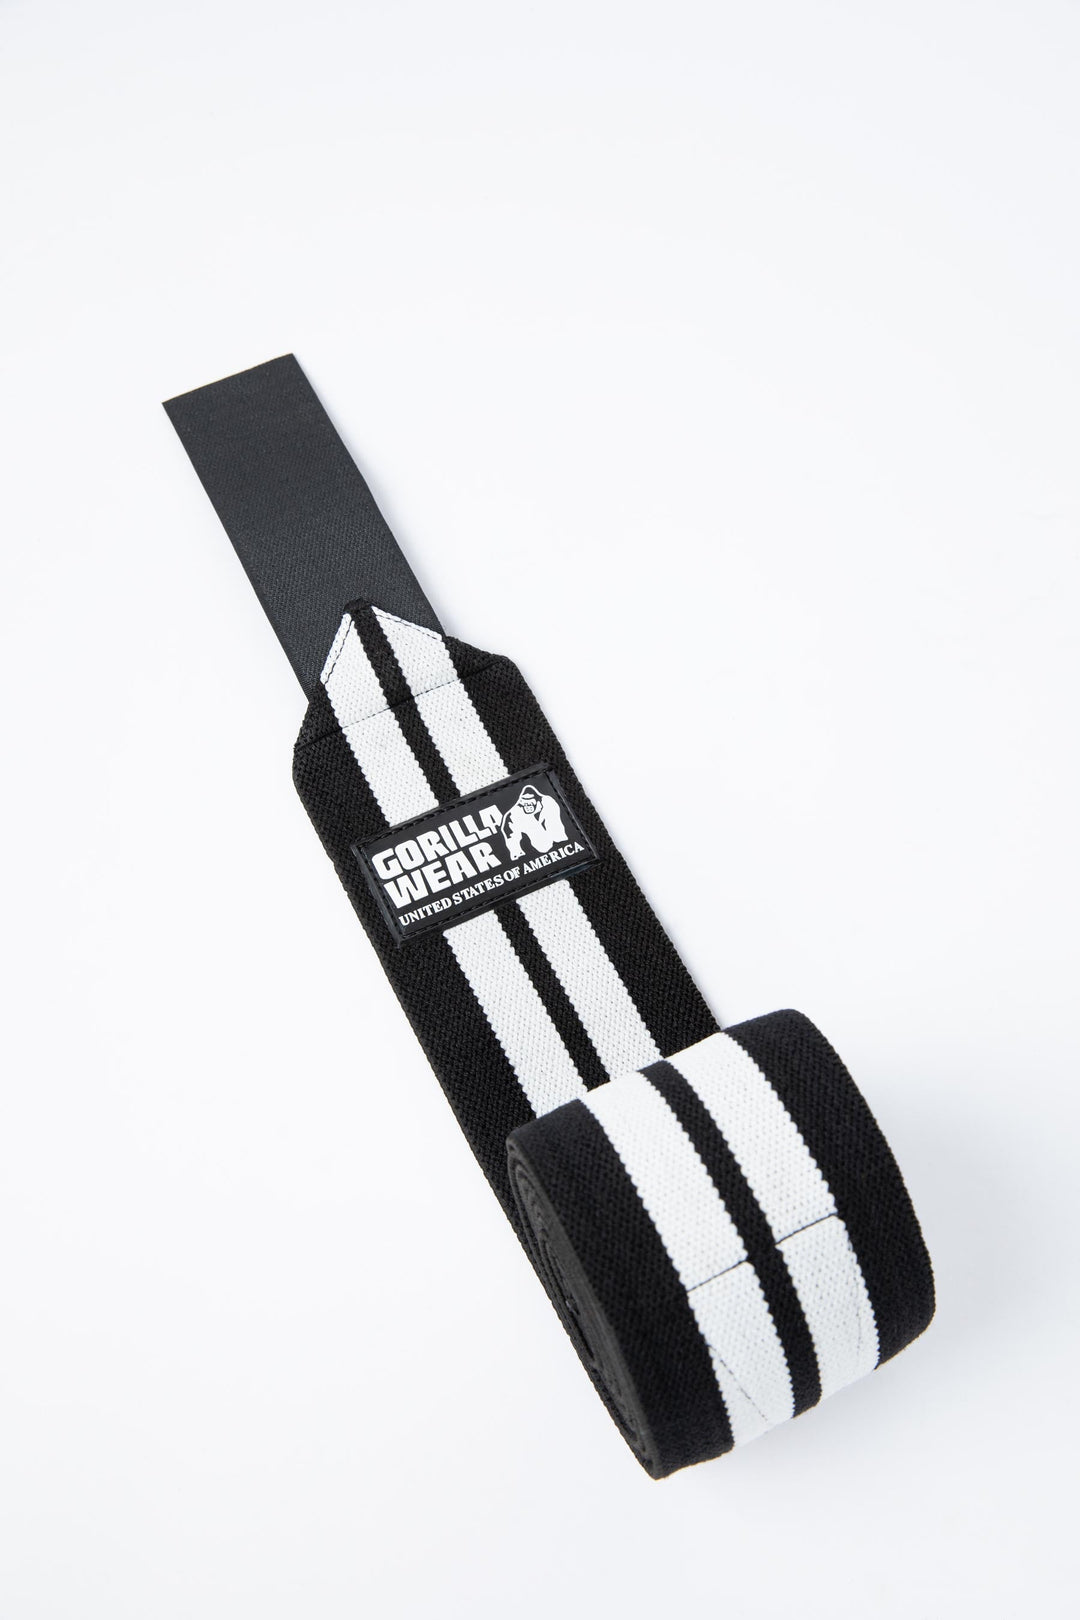 Knee Wraps - Black/White - 200CM